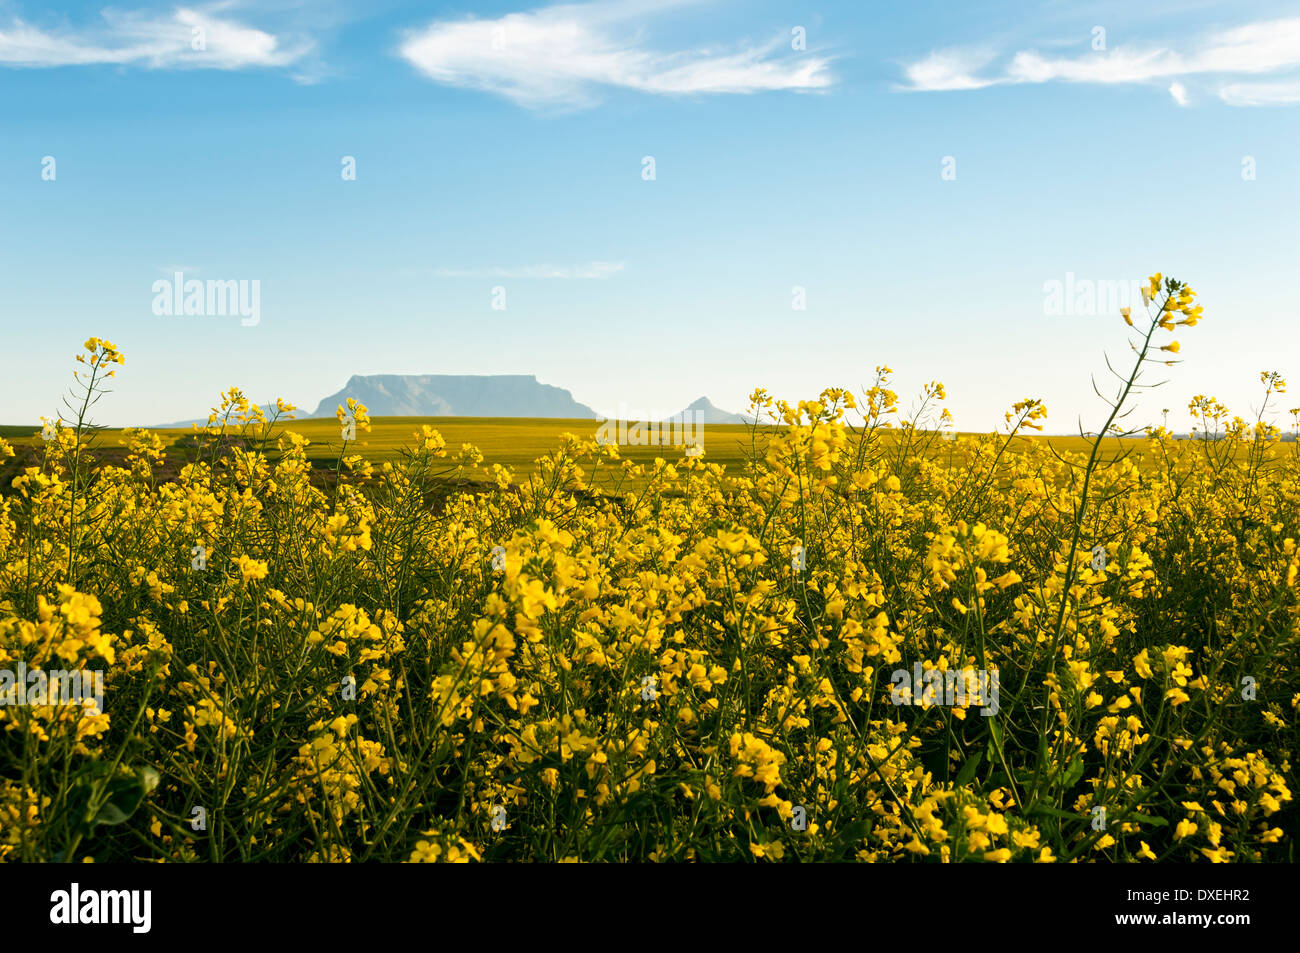 Los campos de color amarillo brillante de flores de colza con la montaña de la Mesa en el fondo contra un cielo azul con nubes dispersas Foto de stock